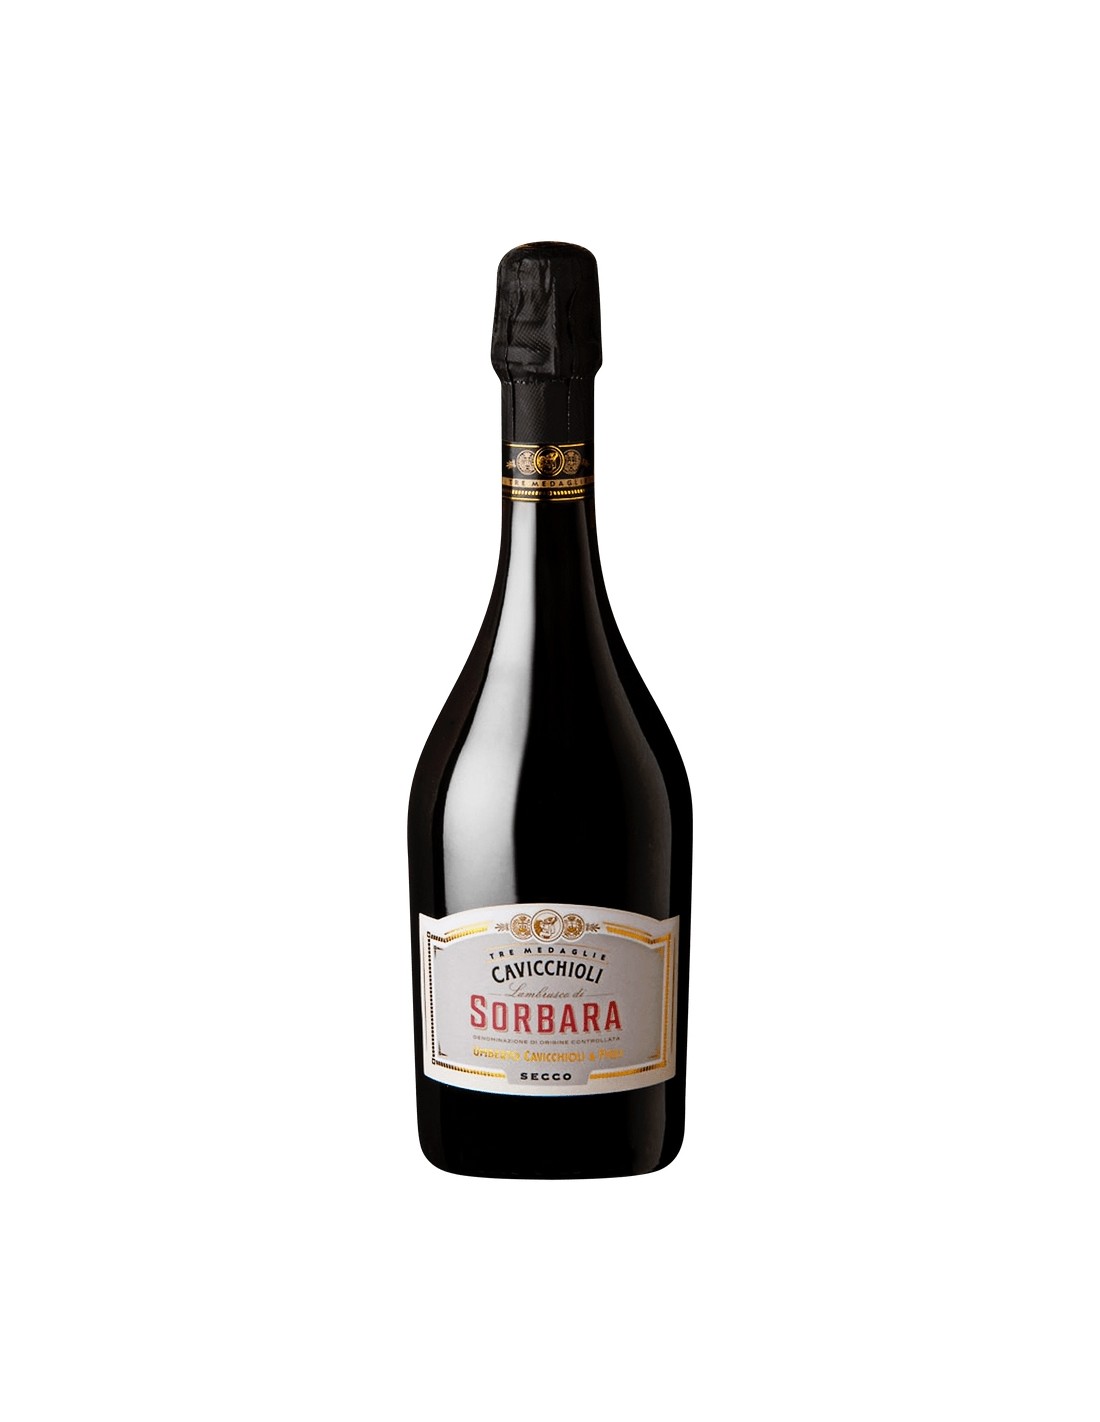 Vin frizzante Cavicchioli Sorbara Secco, 11% alc., 0.75L, Italia alcooldiscount.ro